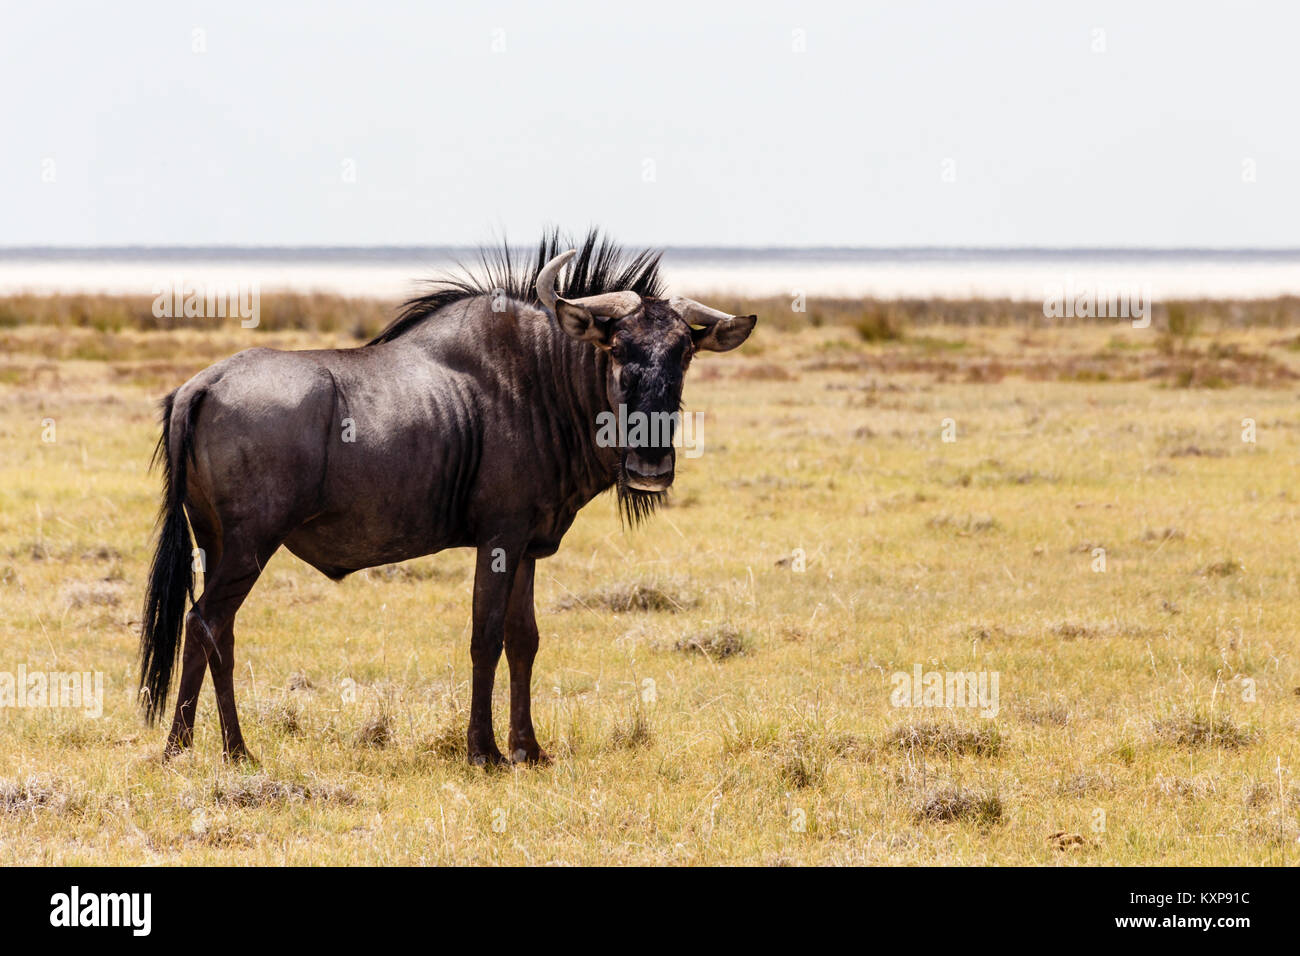 Blue wildebeest, Etosha National Park, Namibia Stock Photo